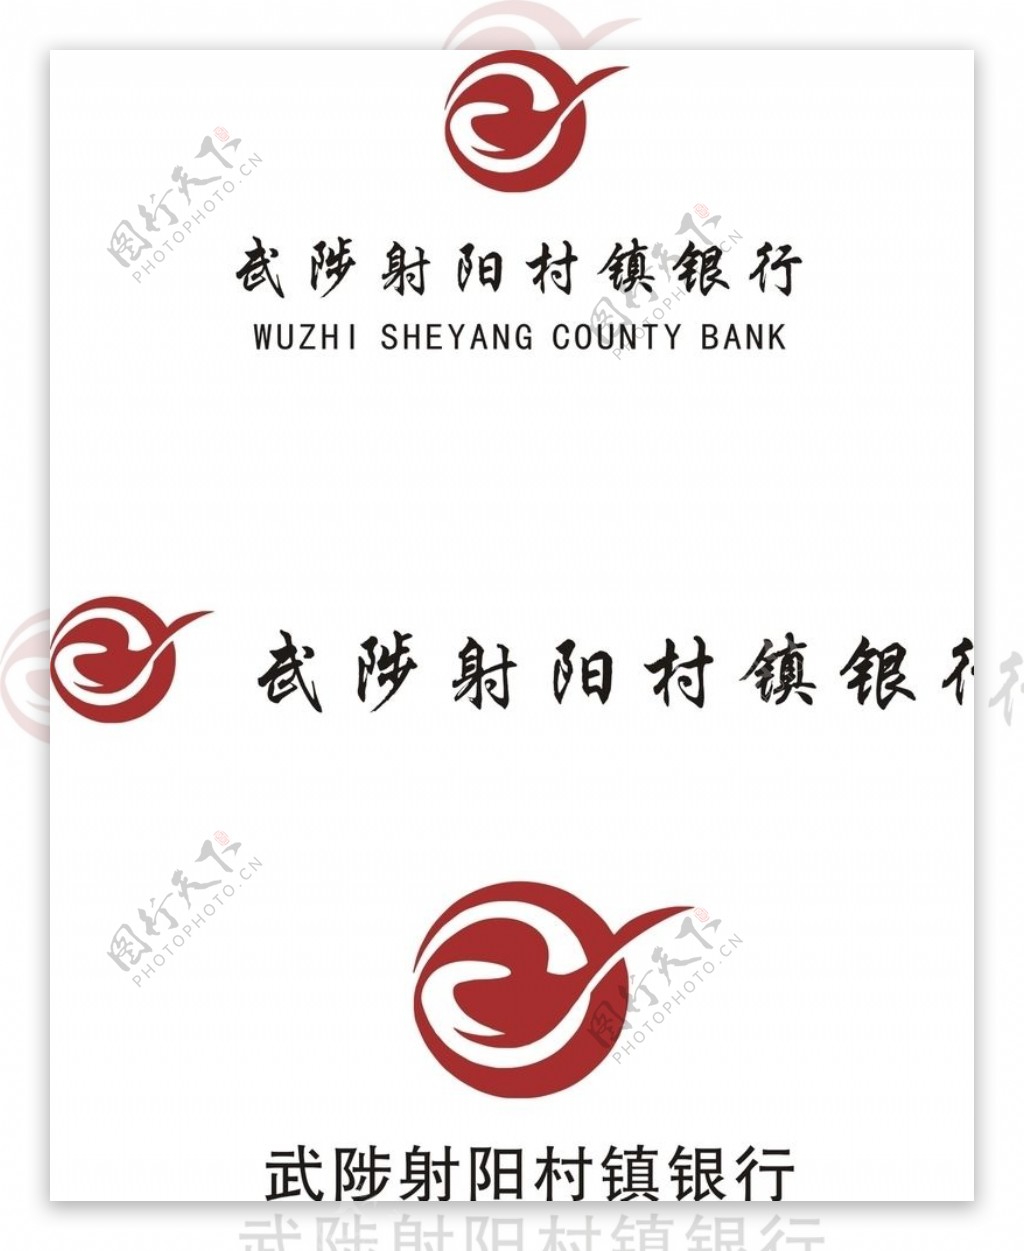 武陟射阳村镇银行标志logo